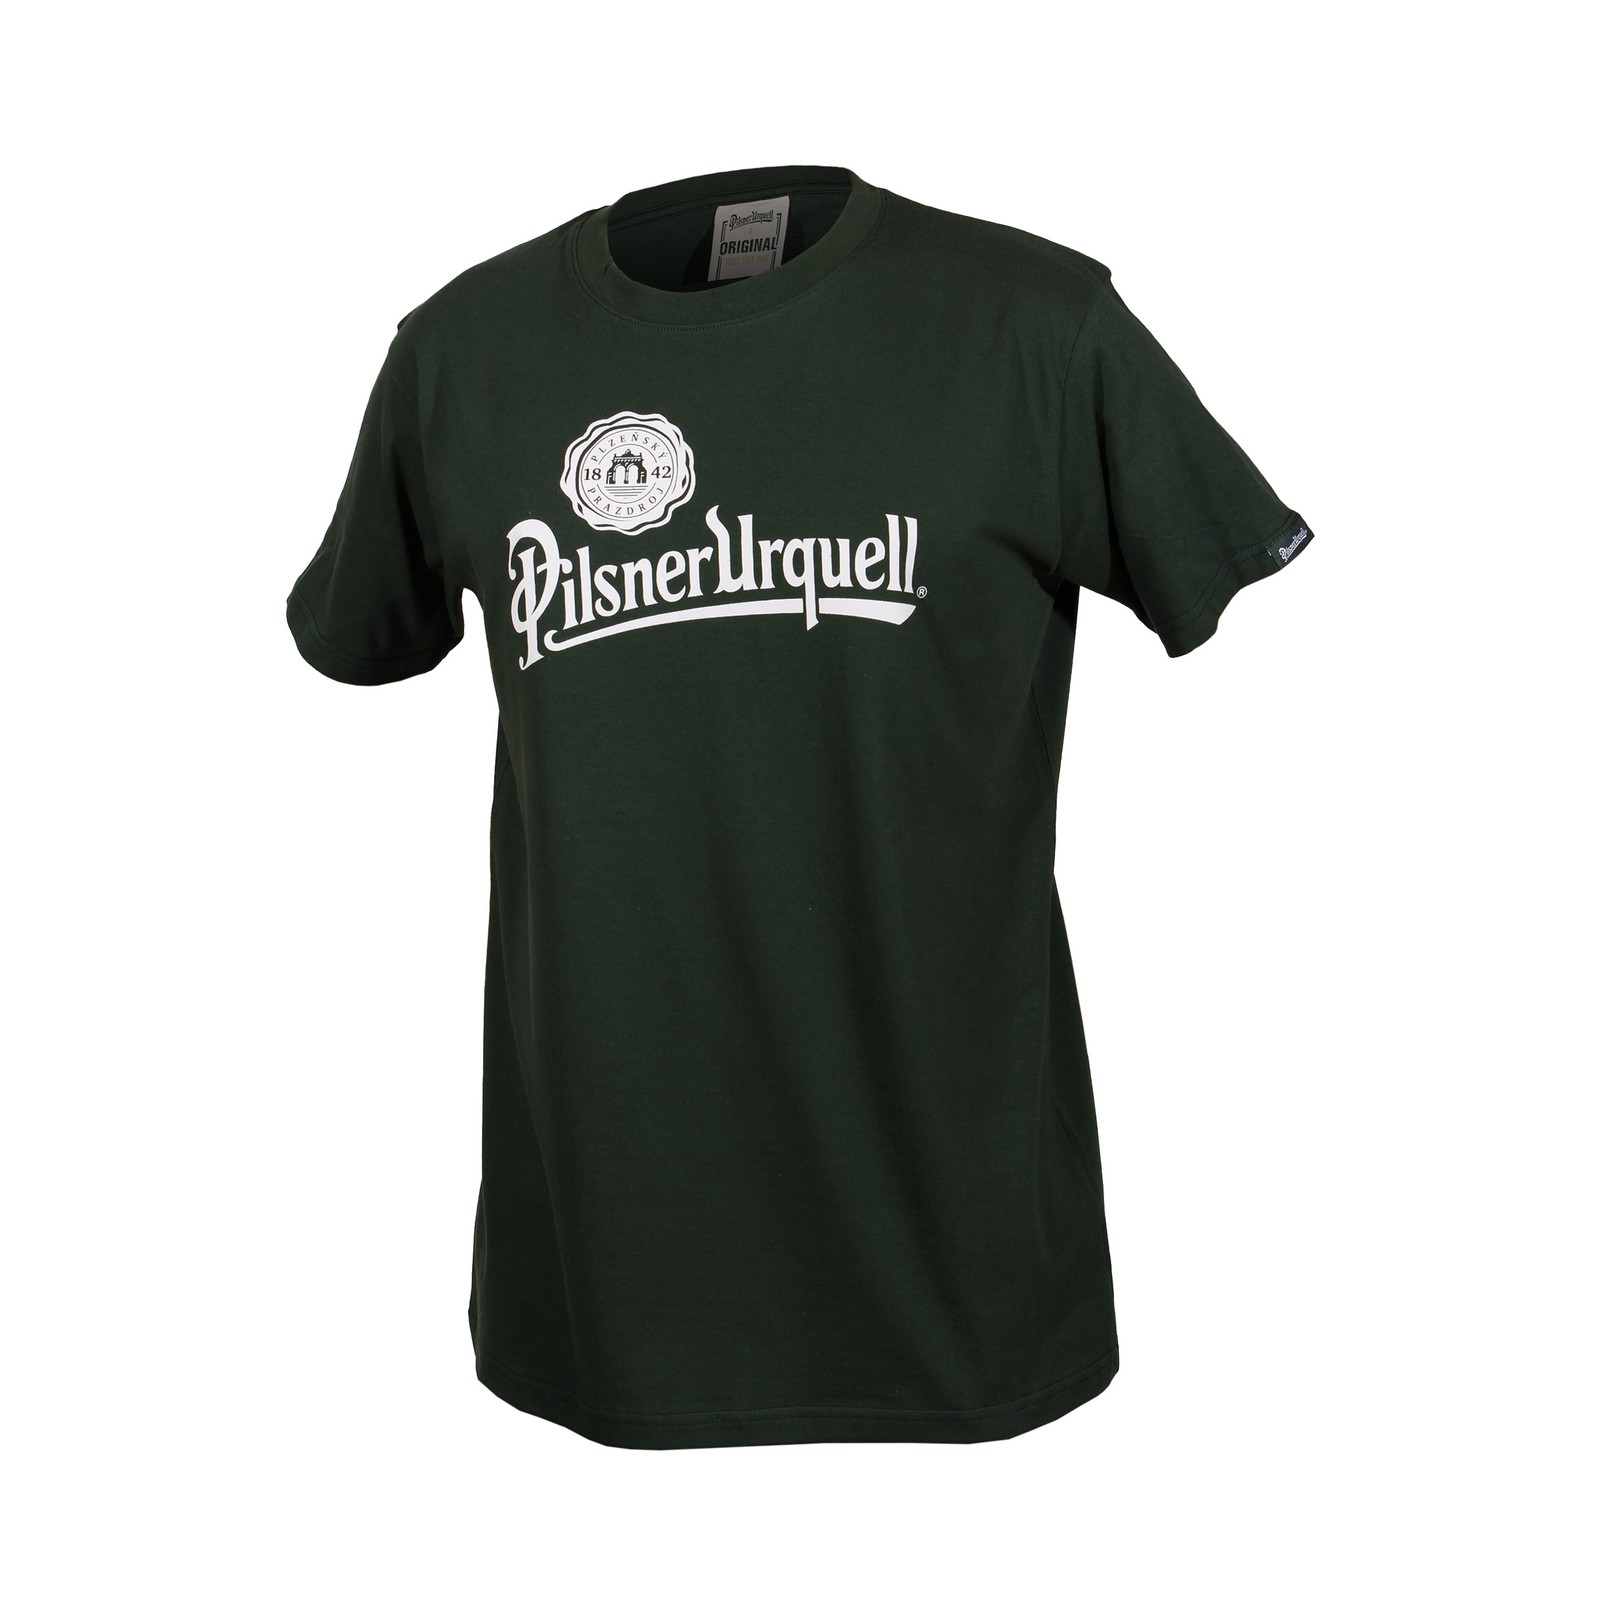 Men's green t-shirt Pilsner Urquell logo